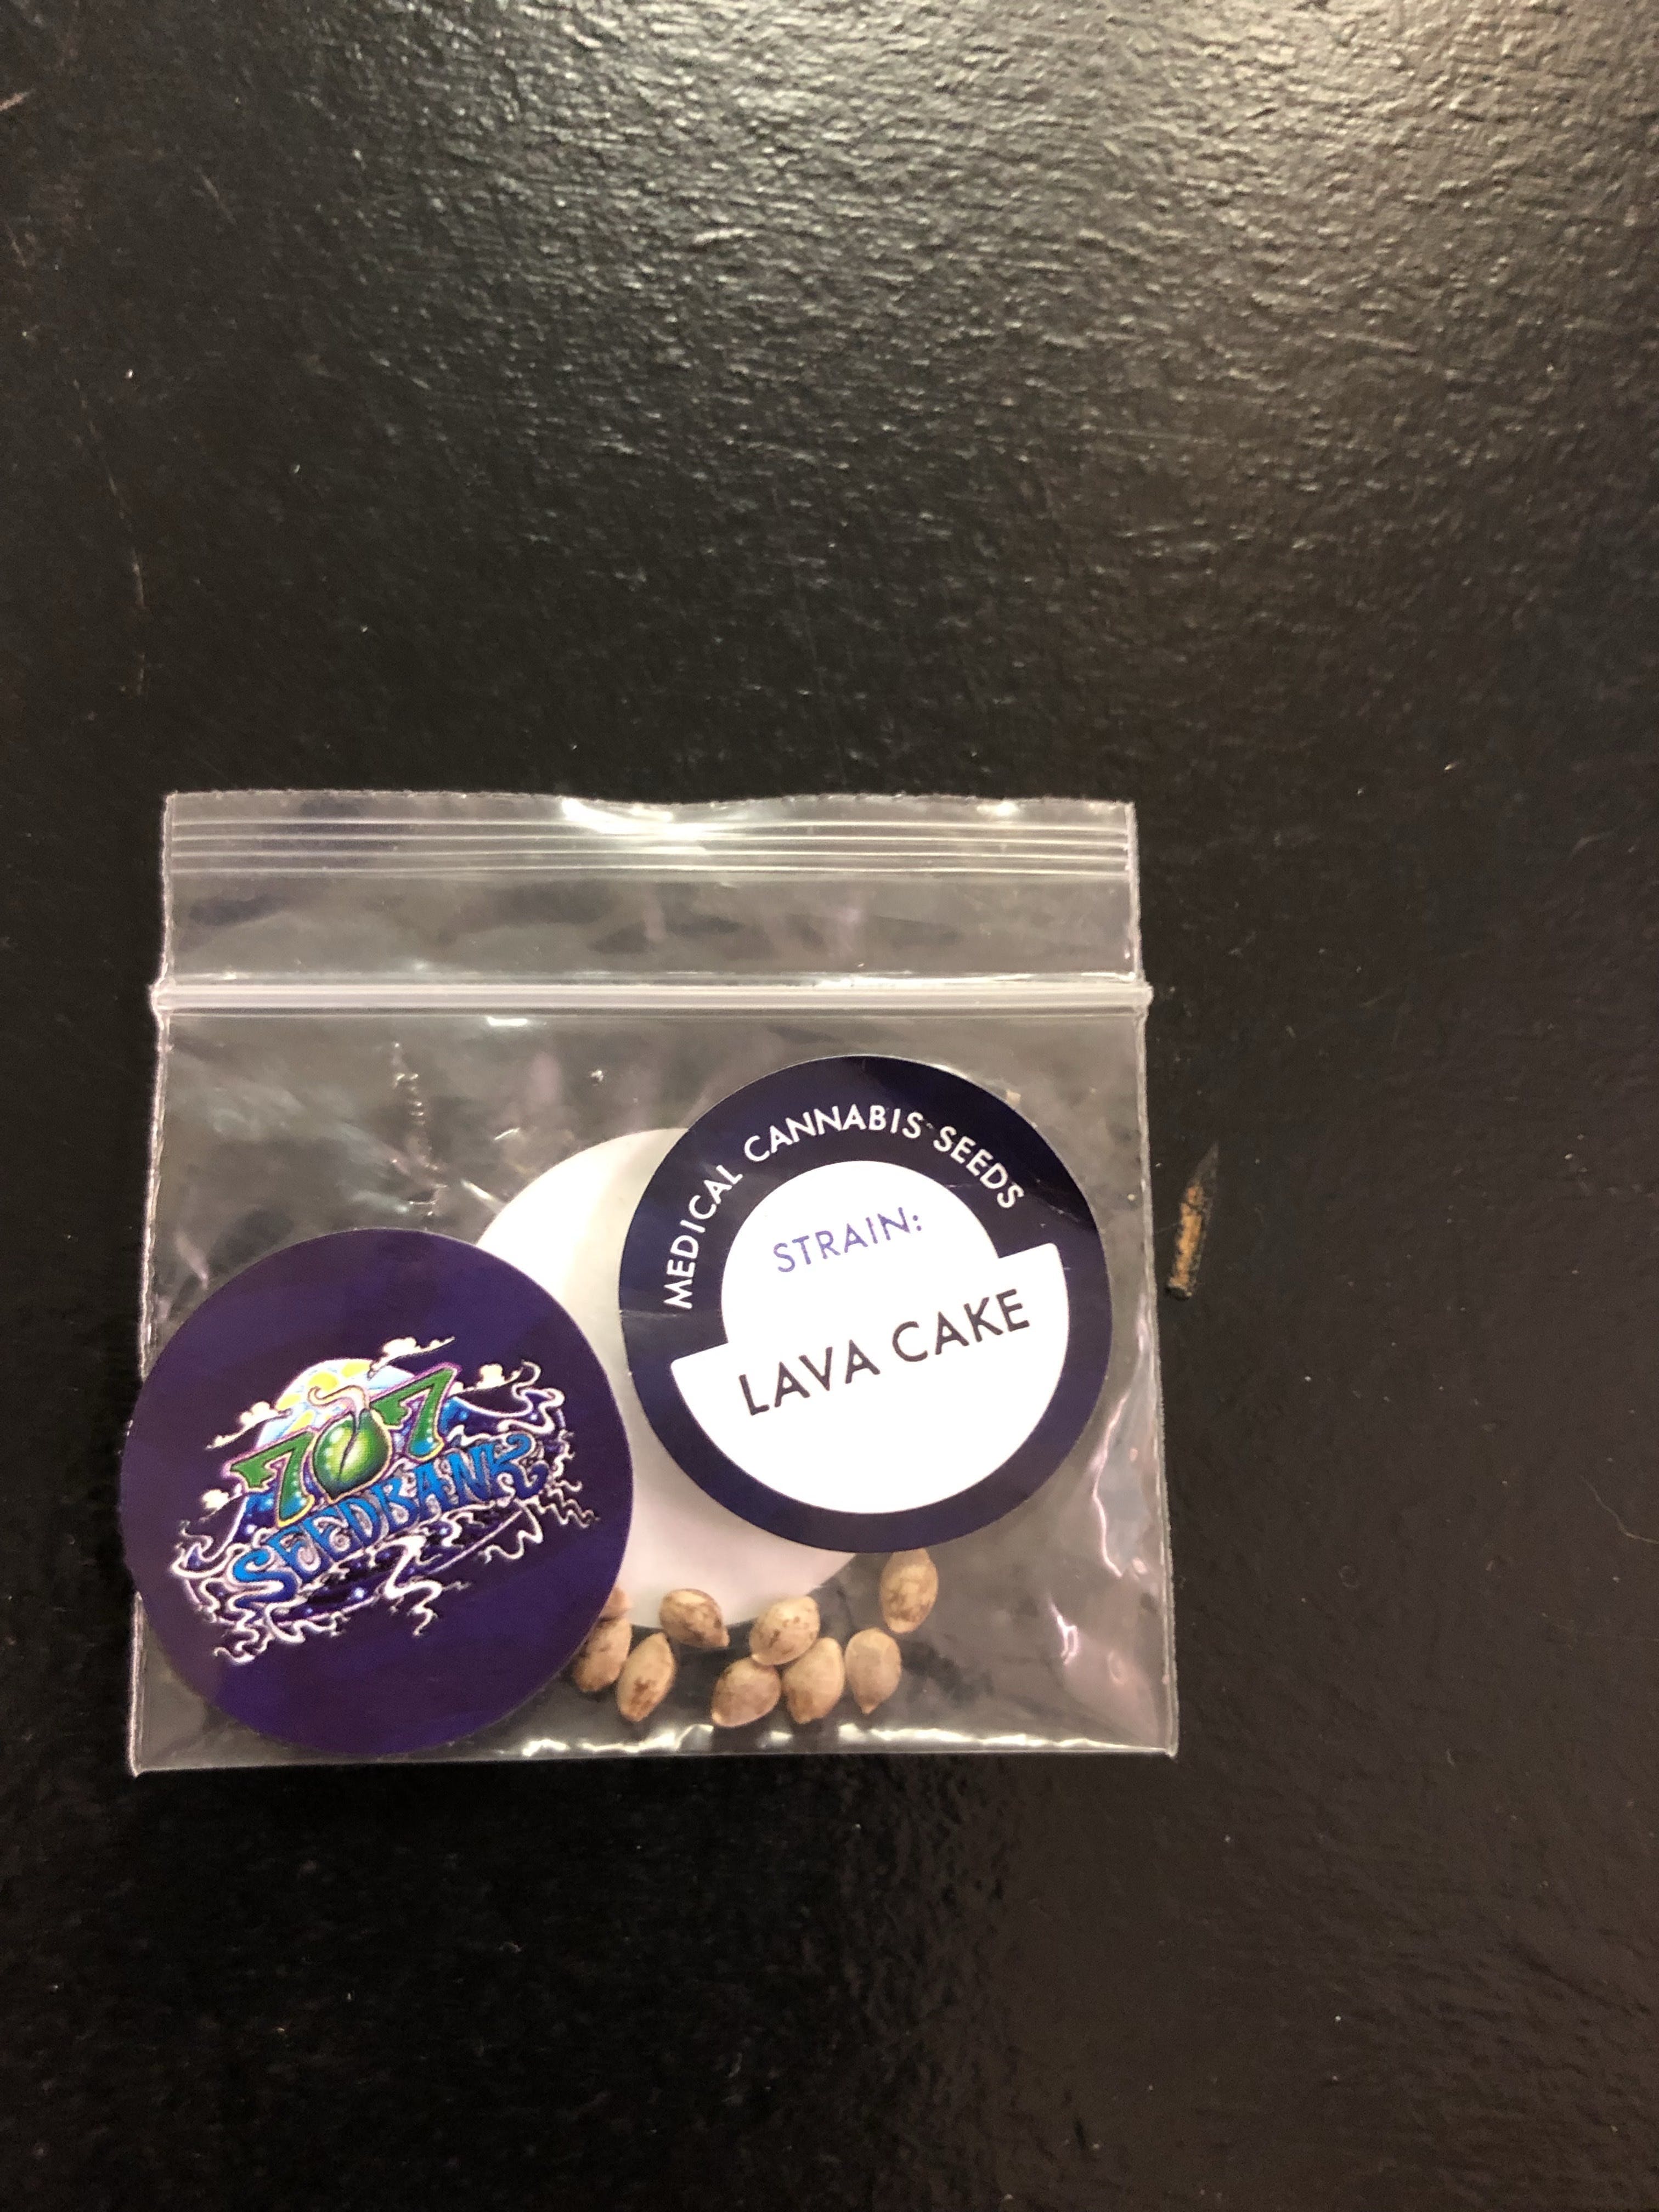 marijuana-dispensaries-9954-east-21st-street-tulsa-lava-cakepack-of-10-seeds